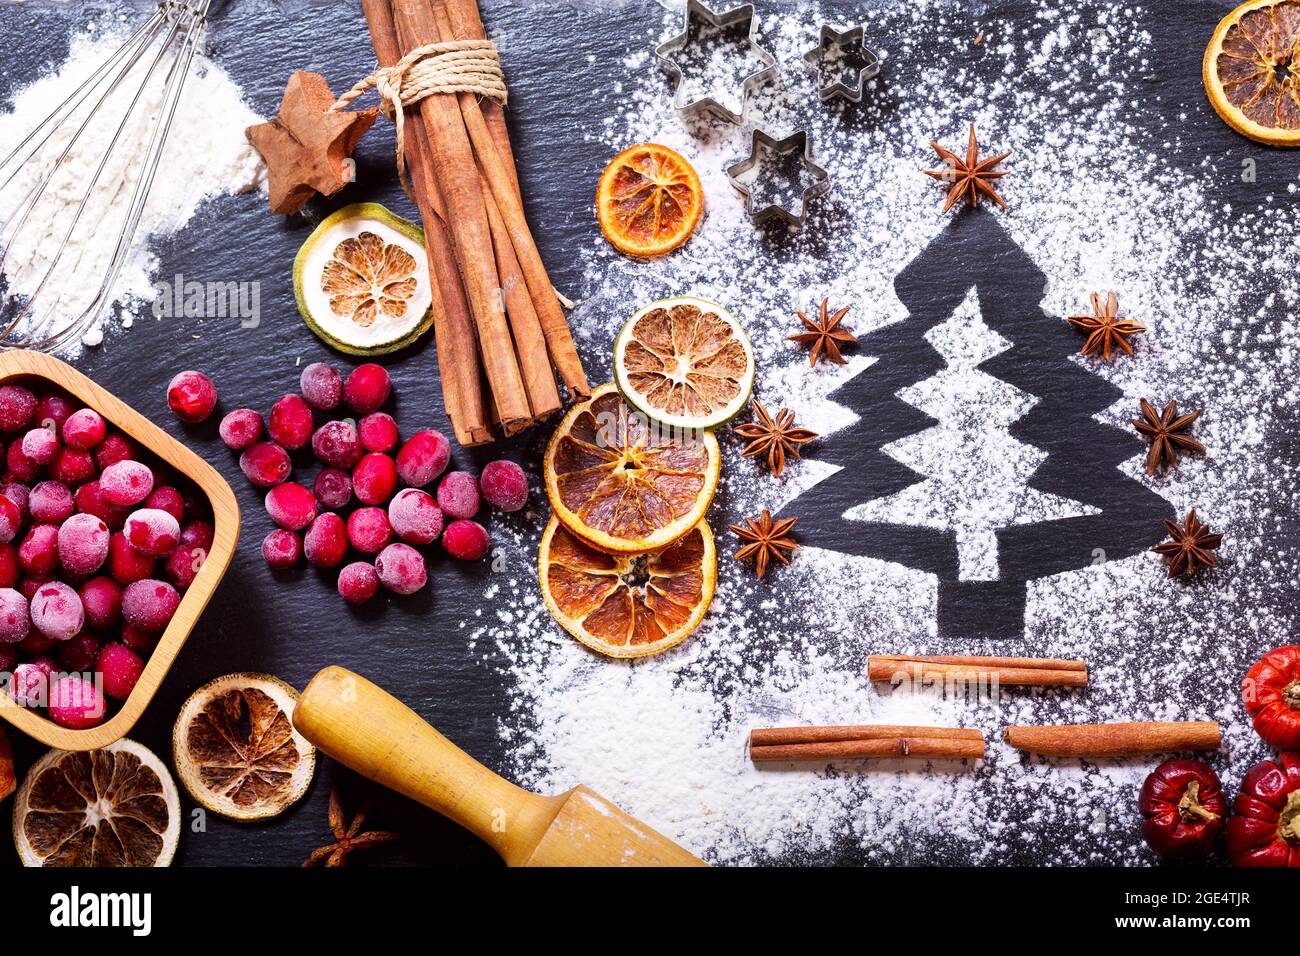 Weihnachtsküche: Tannenbaum aus Mehl auf dunklem Tisch, Backzutaten, gefrorene Preiselbeere und getrocknete Früchte auf dunklem Grund, Draufsicht Stockfoto